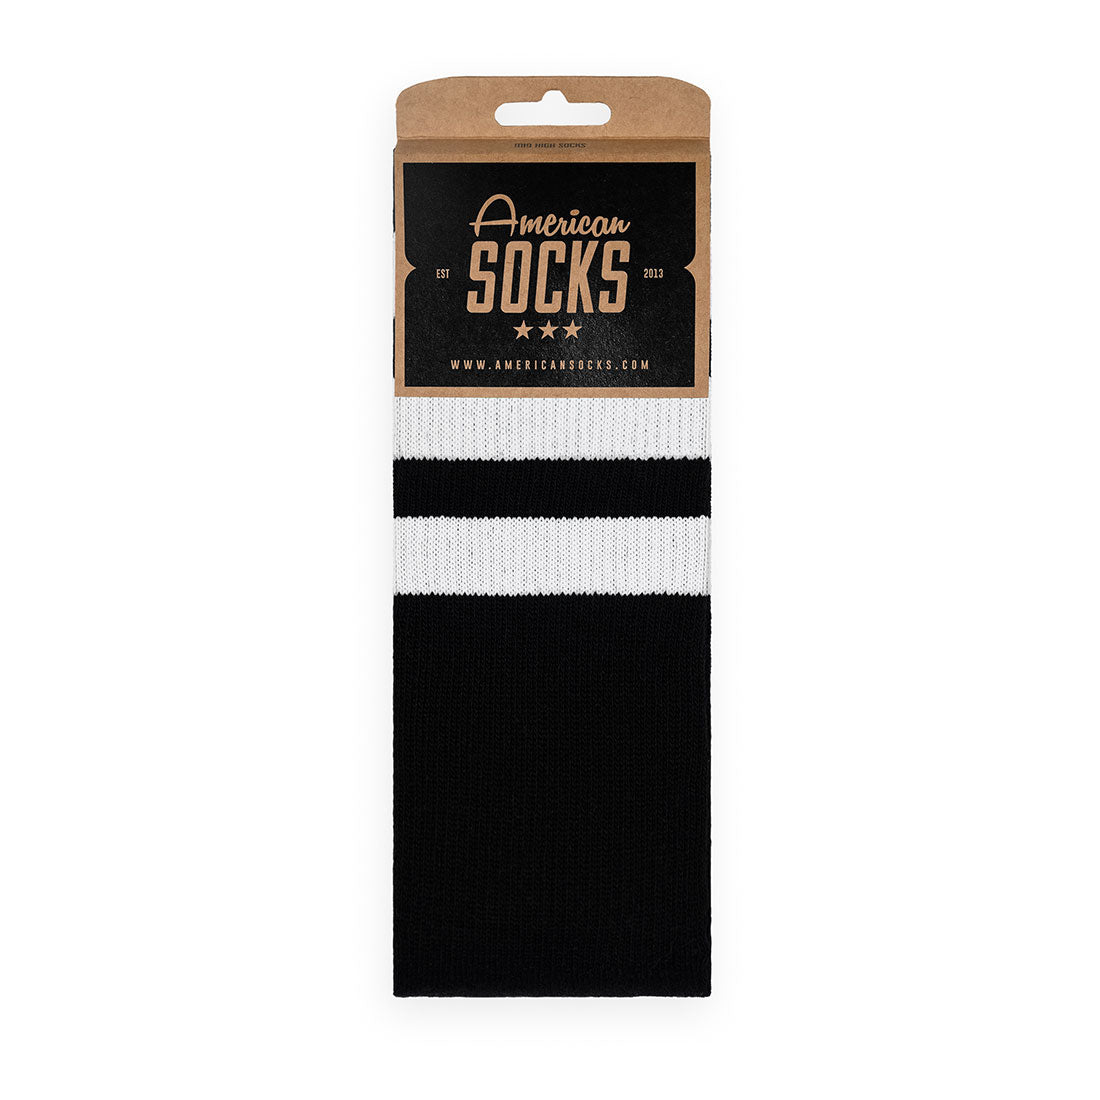 American Socks Classic - Back In Black Apparel Socks